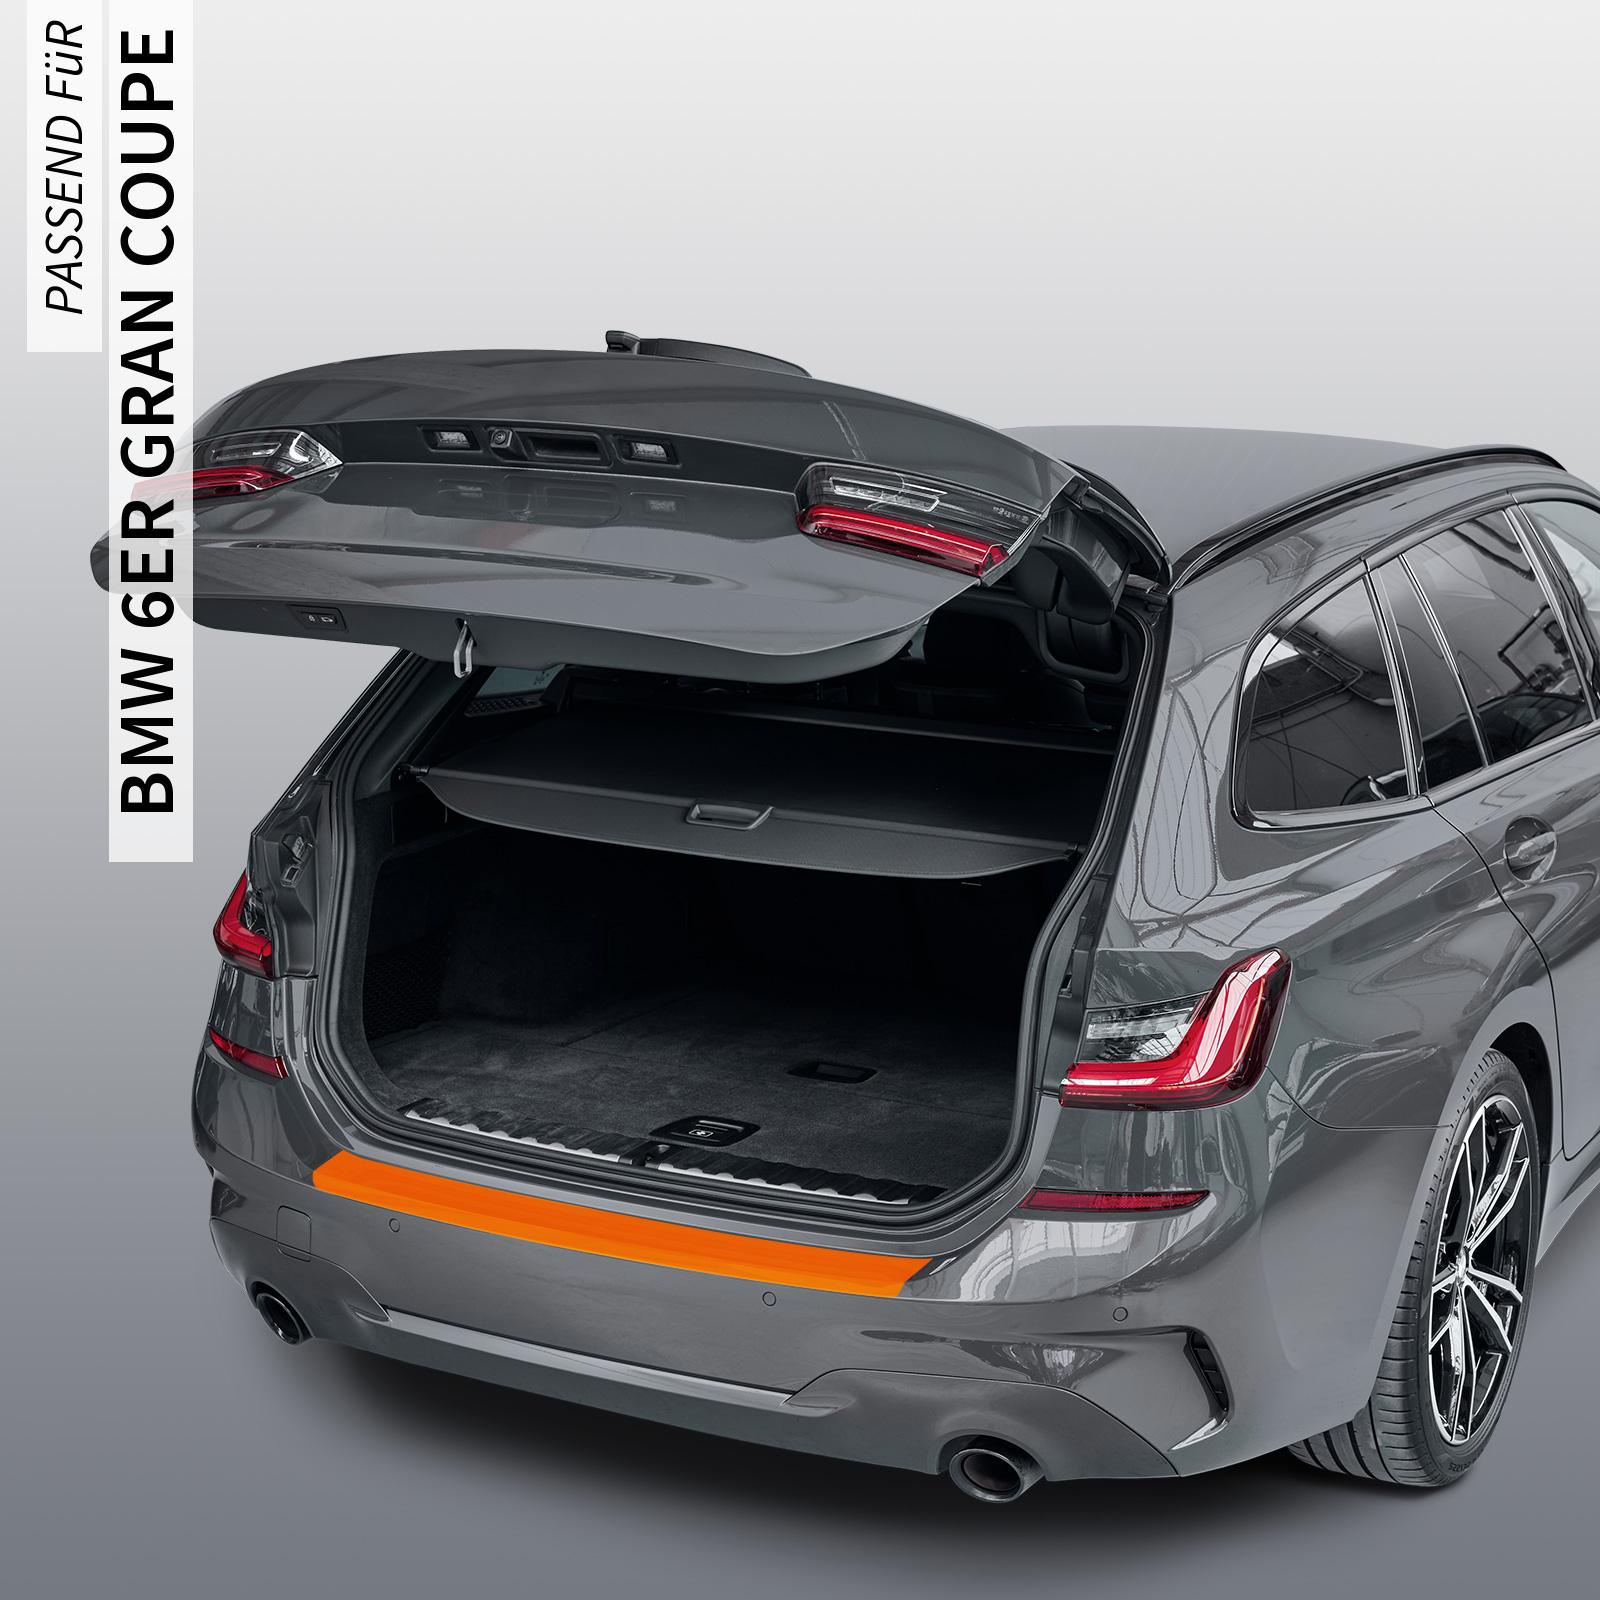 Ladekantenschutzfolie - Transparent Glatt Hochglänzend 150 µm stark für BMW 6er Gran Coupe Typ F06, ab BJ 05/2012